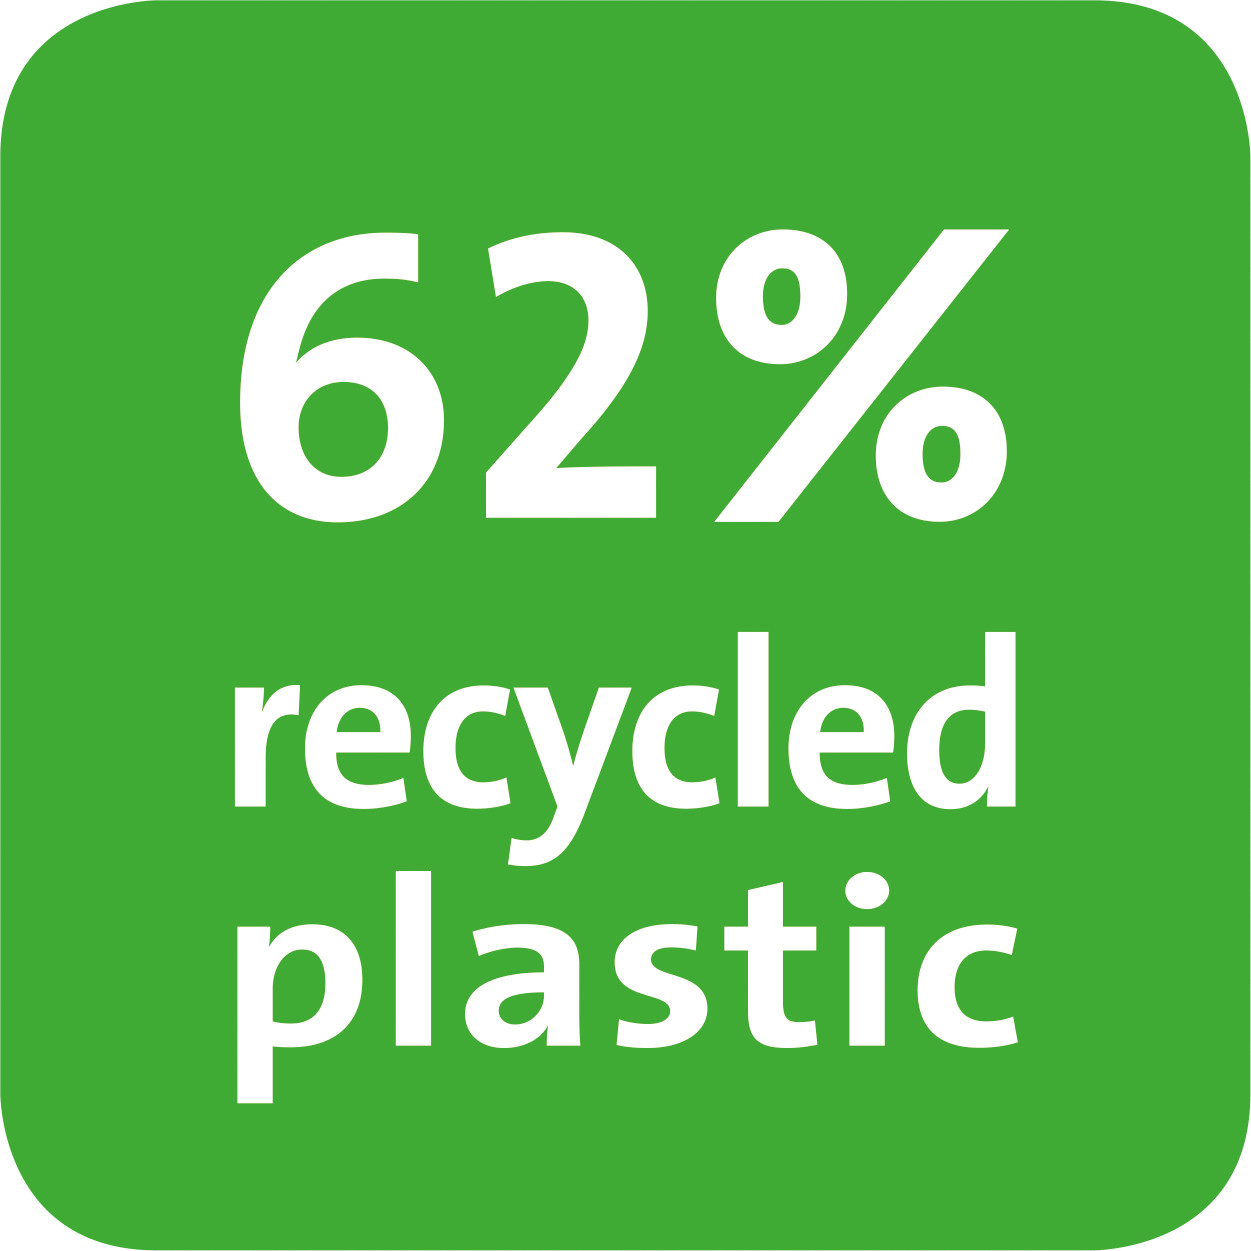 Hodnota udává podíl recyklace produktu v procentech